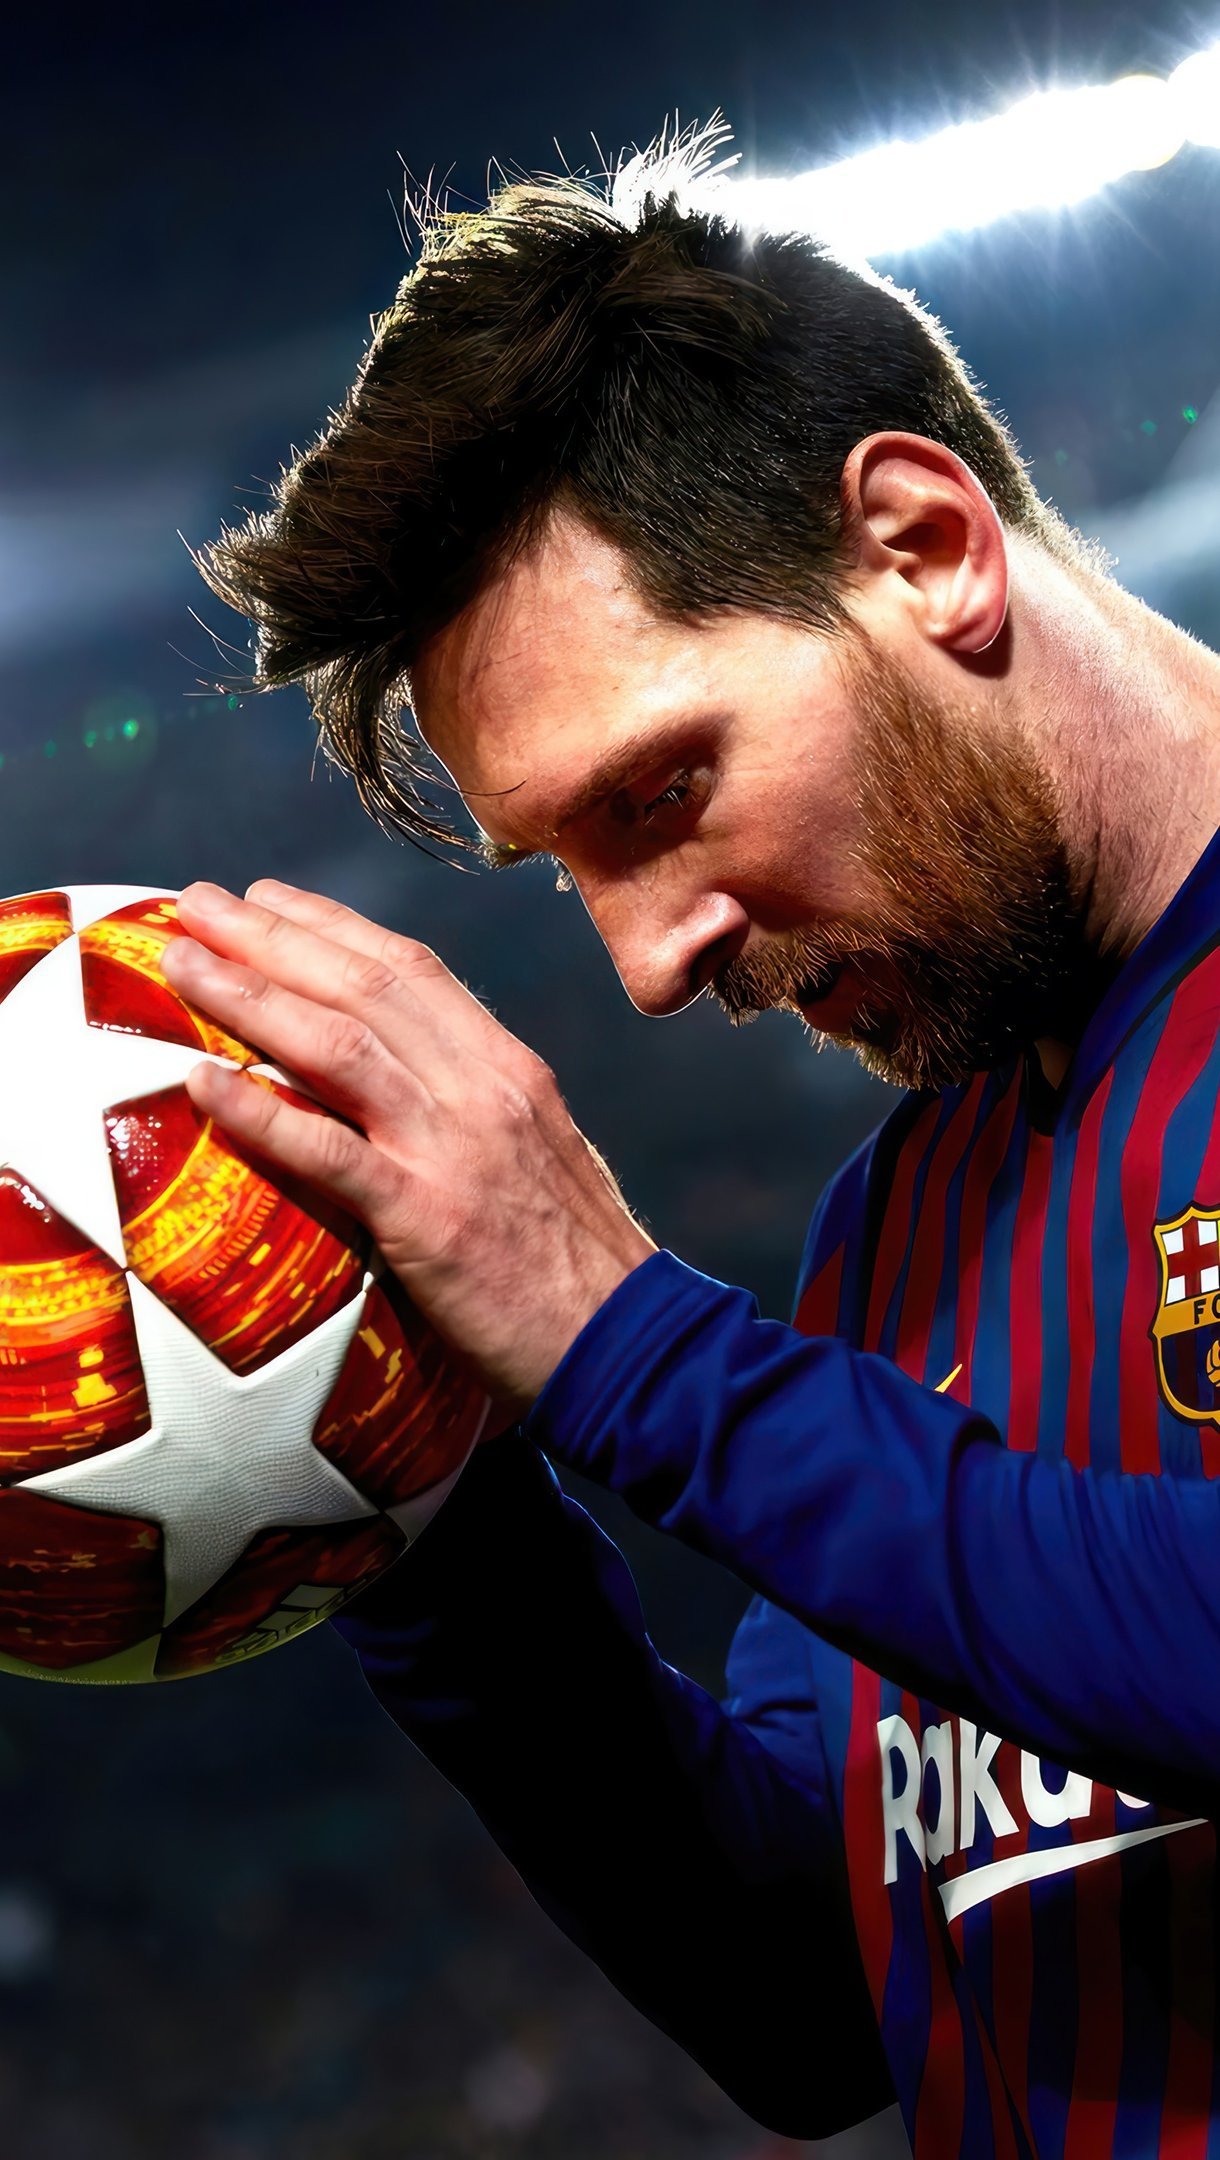 Thưởng thức những bức ảnh Messi 4k wallpaper sẽ đưa bạn vào trực tiếp cuộc chiến của Barcelona trong những trận đấu đầy kịch tính. Vẻ đẹp lộng lẫy của Camp Nou, sự gắn bó tuyệt vời giữa Messi và các đồng đội, cùng những khoảnh khắc đáng nhớ sẽ được tái hiện trên những hình nền chất lượng cao này. Hãy để bạn mất mình trong không khí sôi động của bóng đá và cảm nhận tinh hoa của môn thể thao vua.